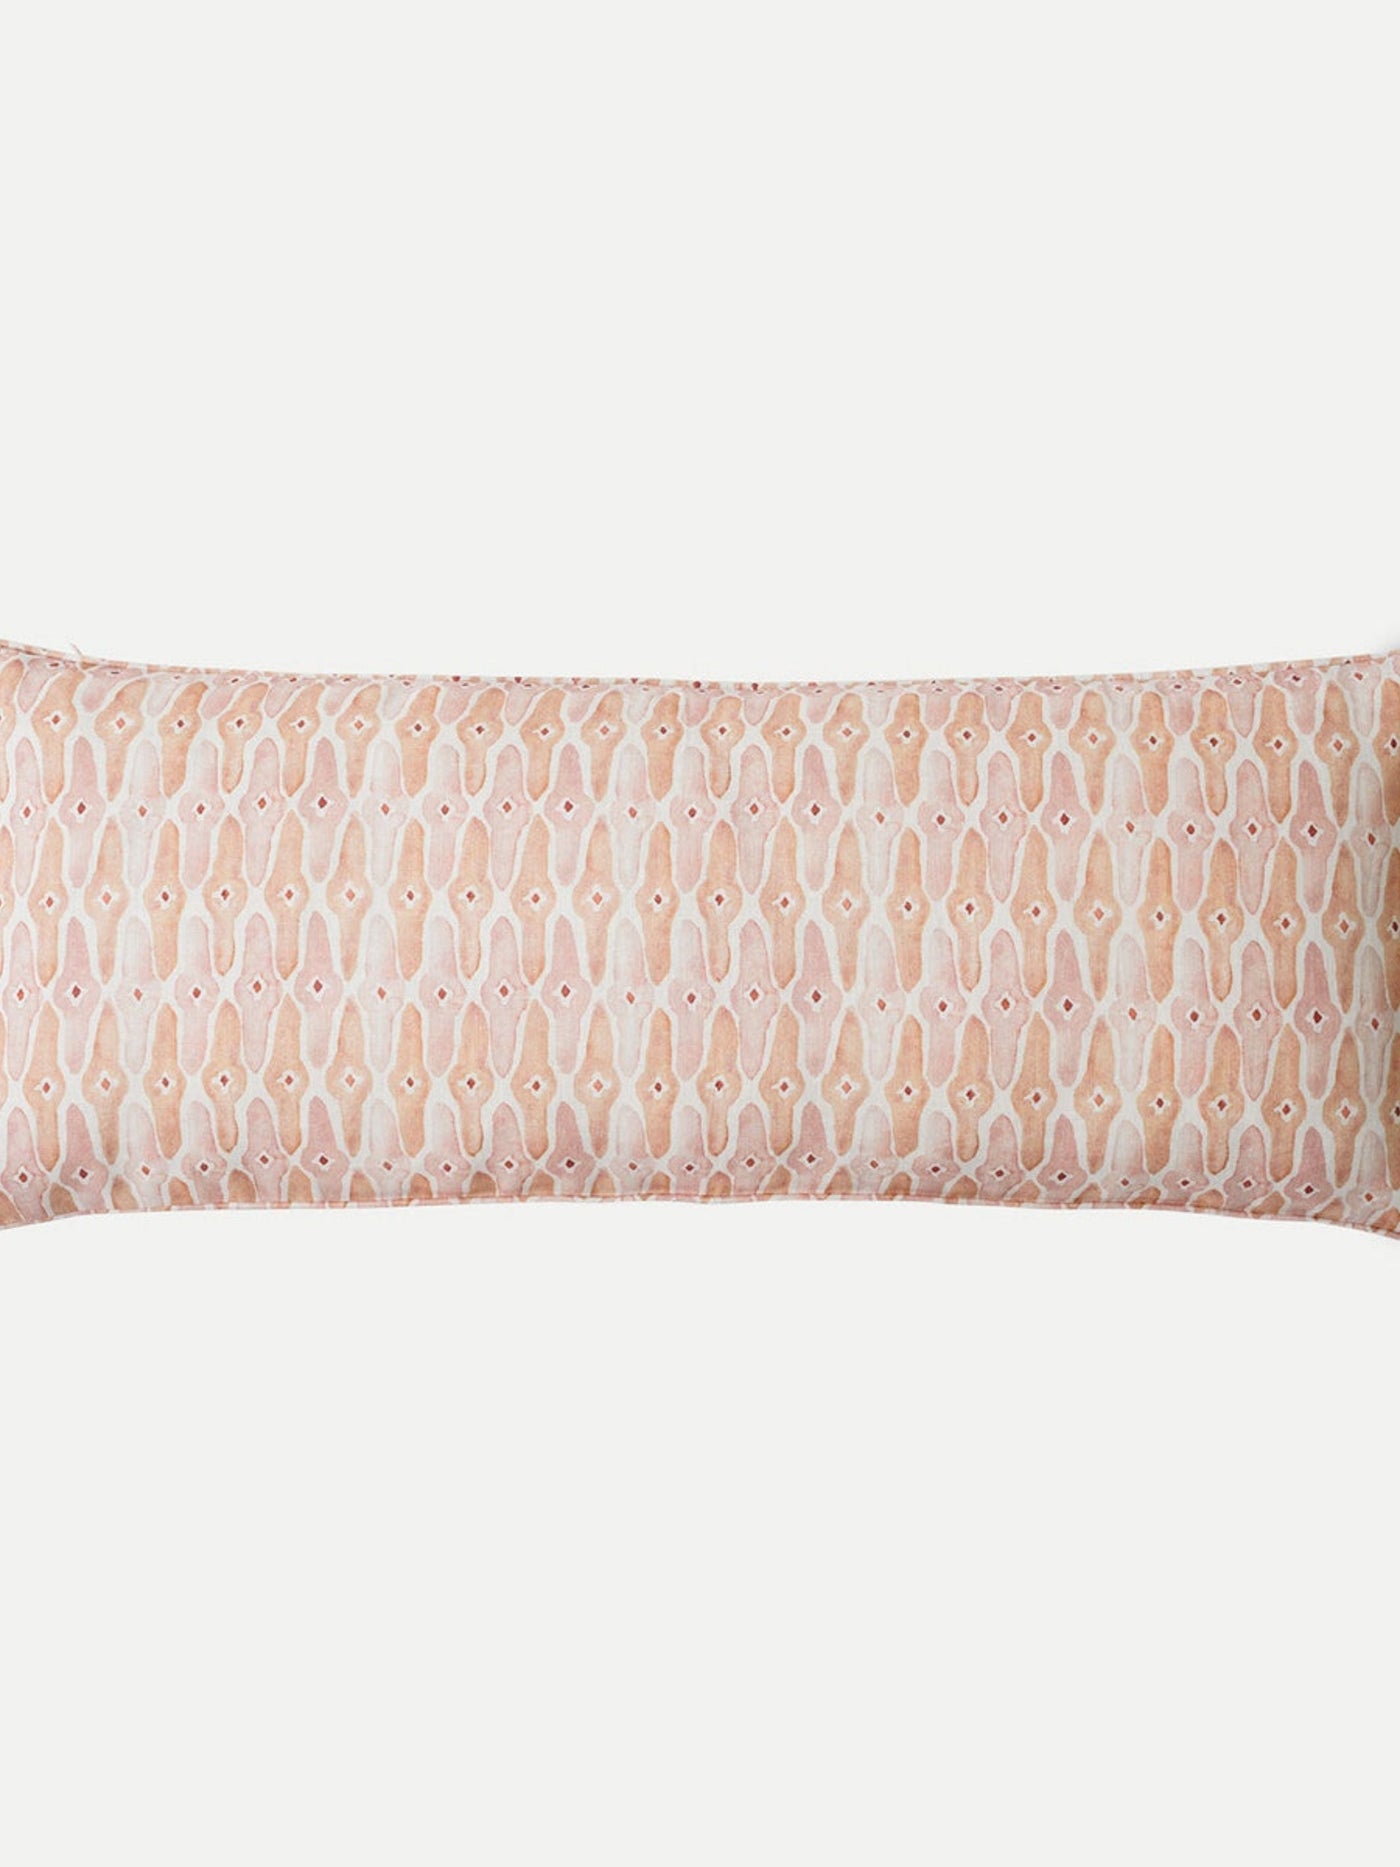 Mosaic Blush Lumbar Cushion Cover